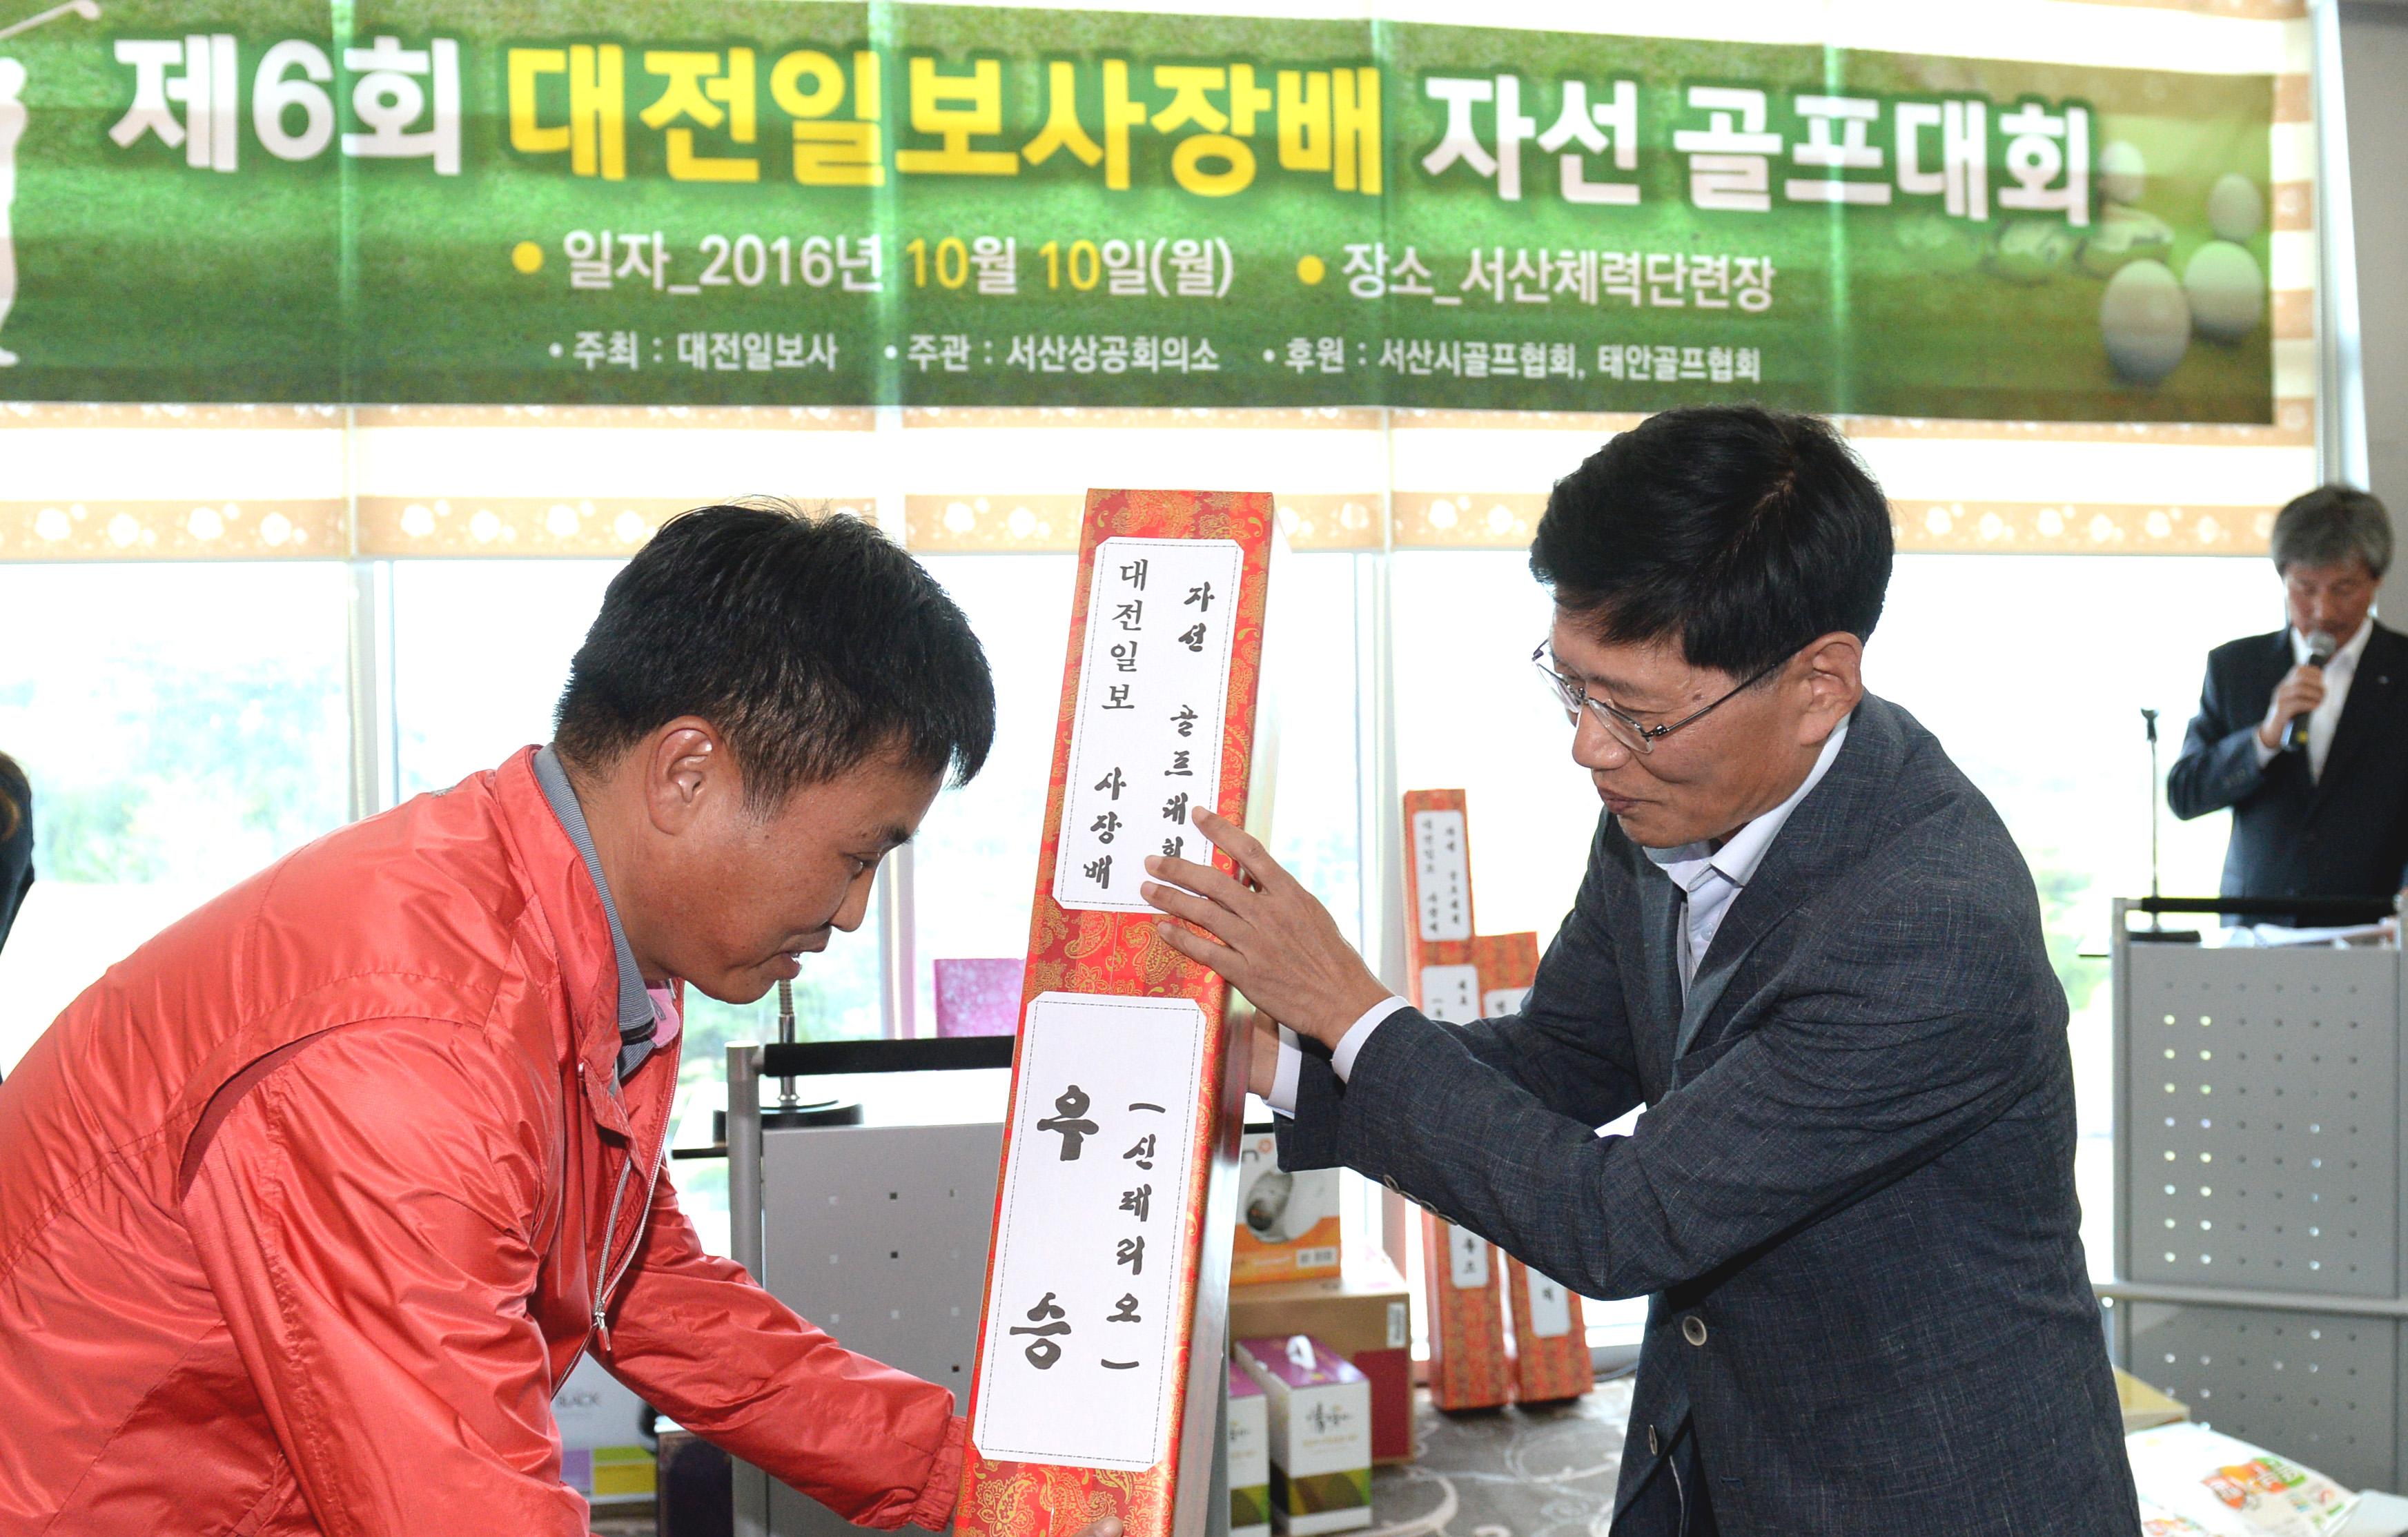 오한진 대전일보 편집국장(오른쪽)이 우승자인 한덕규씨에게 상패와 부상을 전달하고 있다.